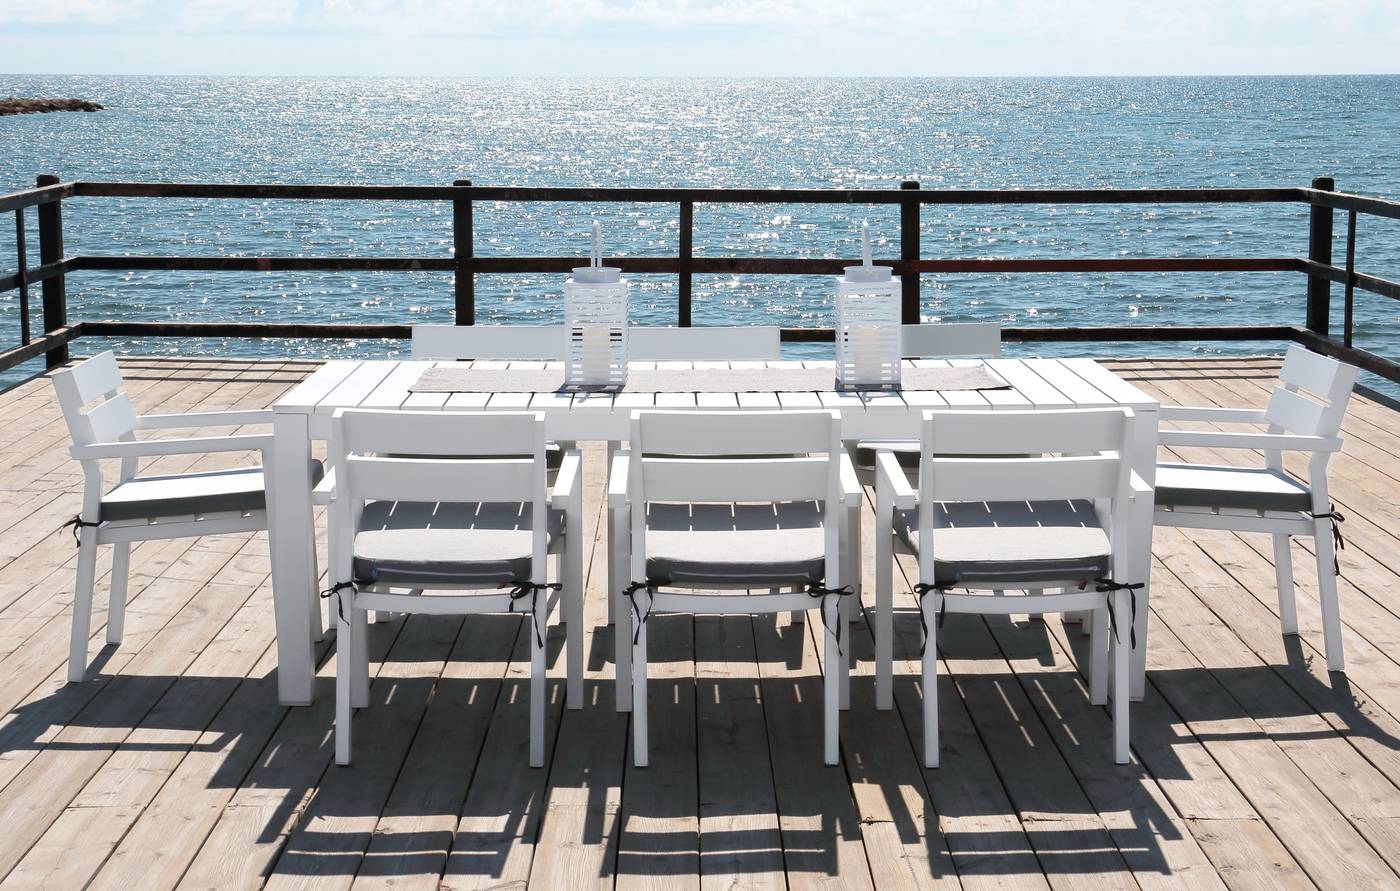 Sillón Aluminio Luxe Marlet - Sillón lujo para jardín o terraza. Estructura, asiento y respaldo de aluminio color blanco.